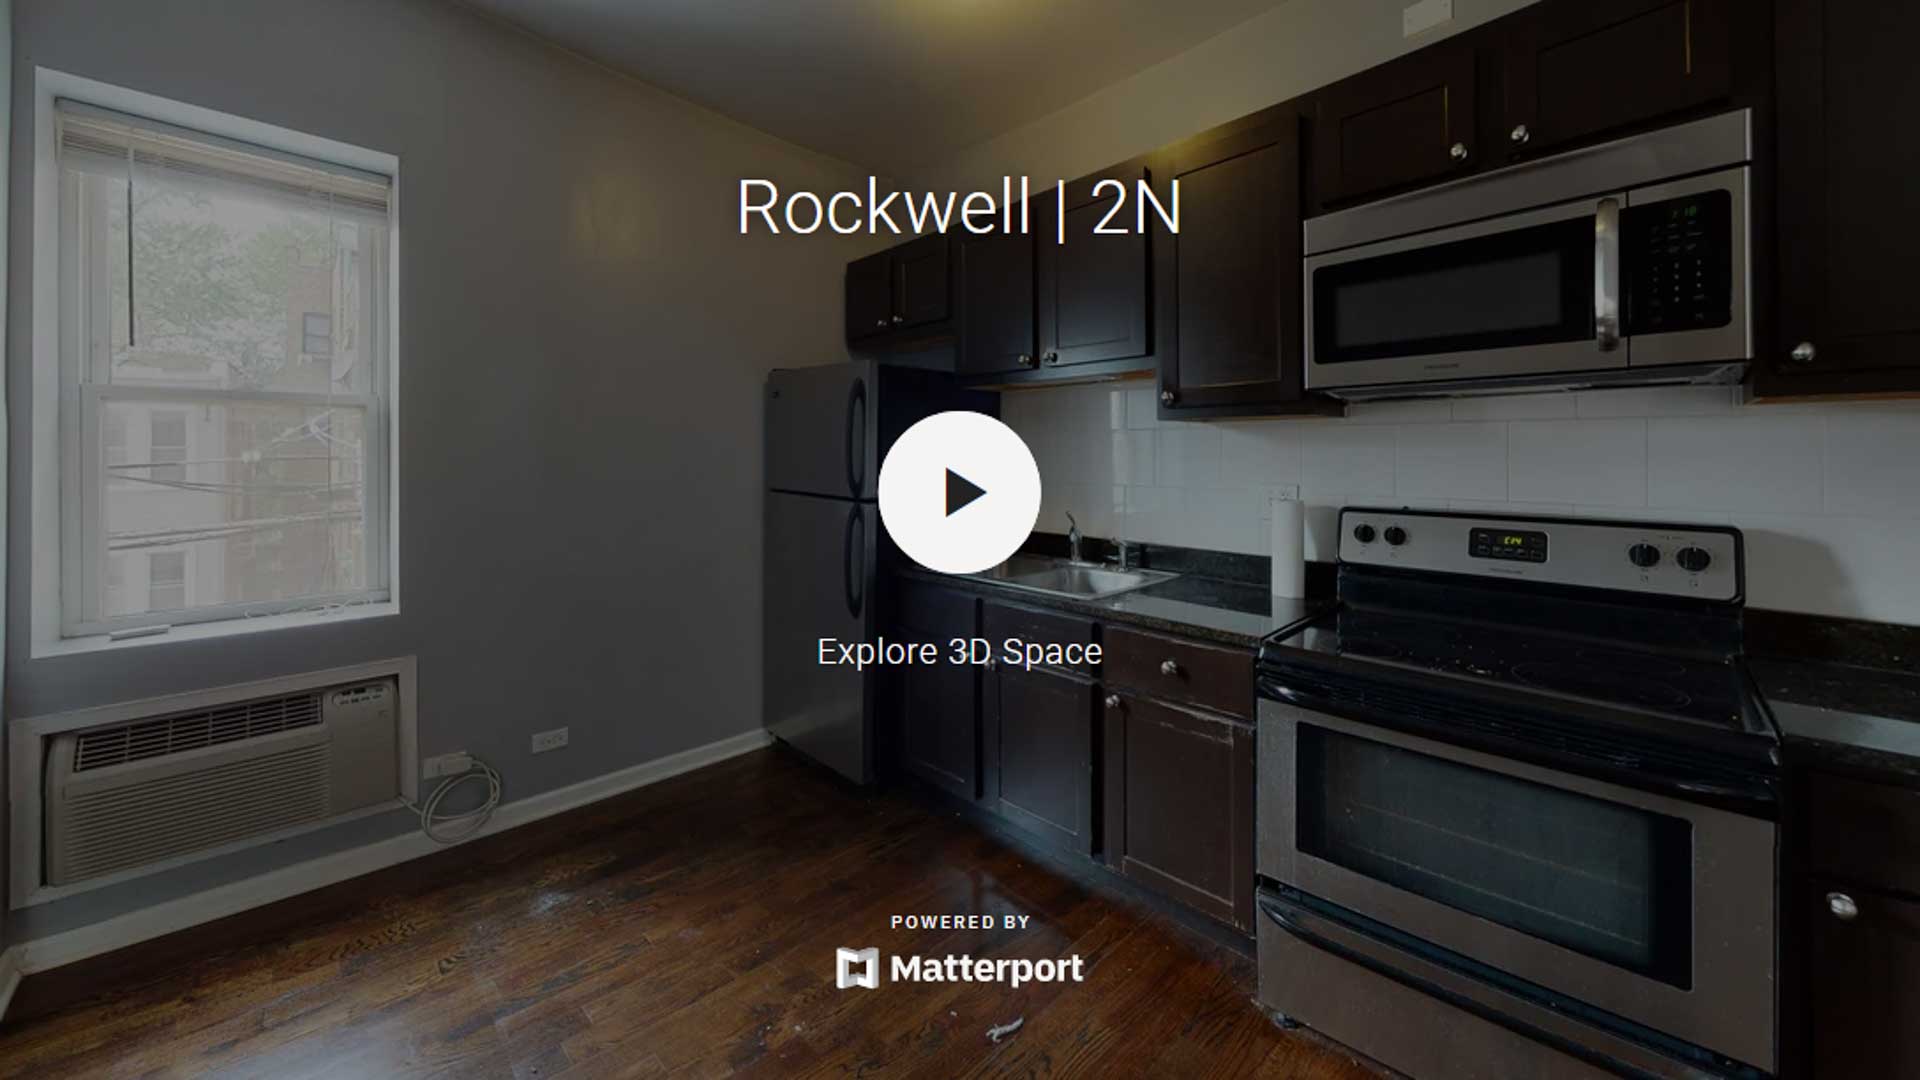 Rockwell | 2N